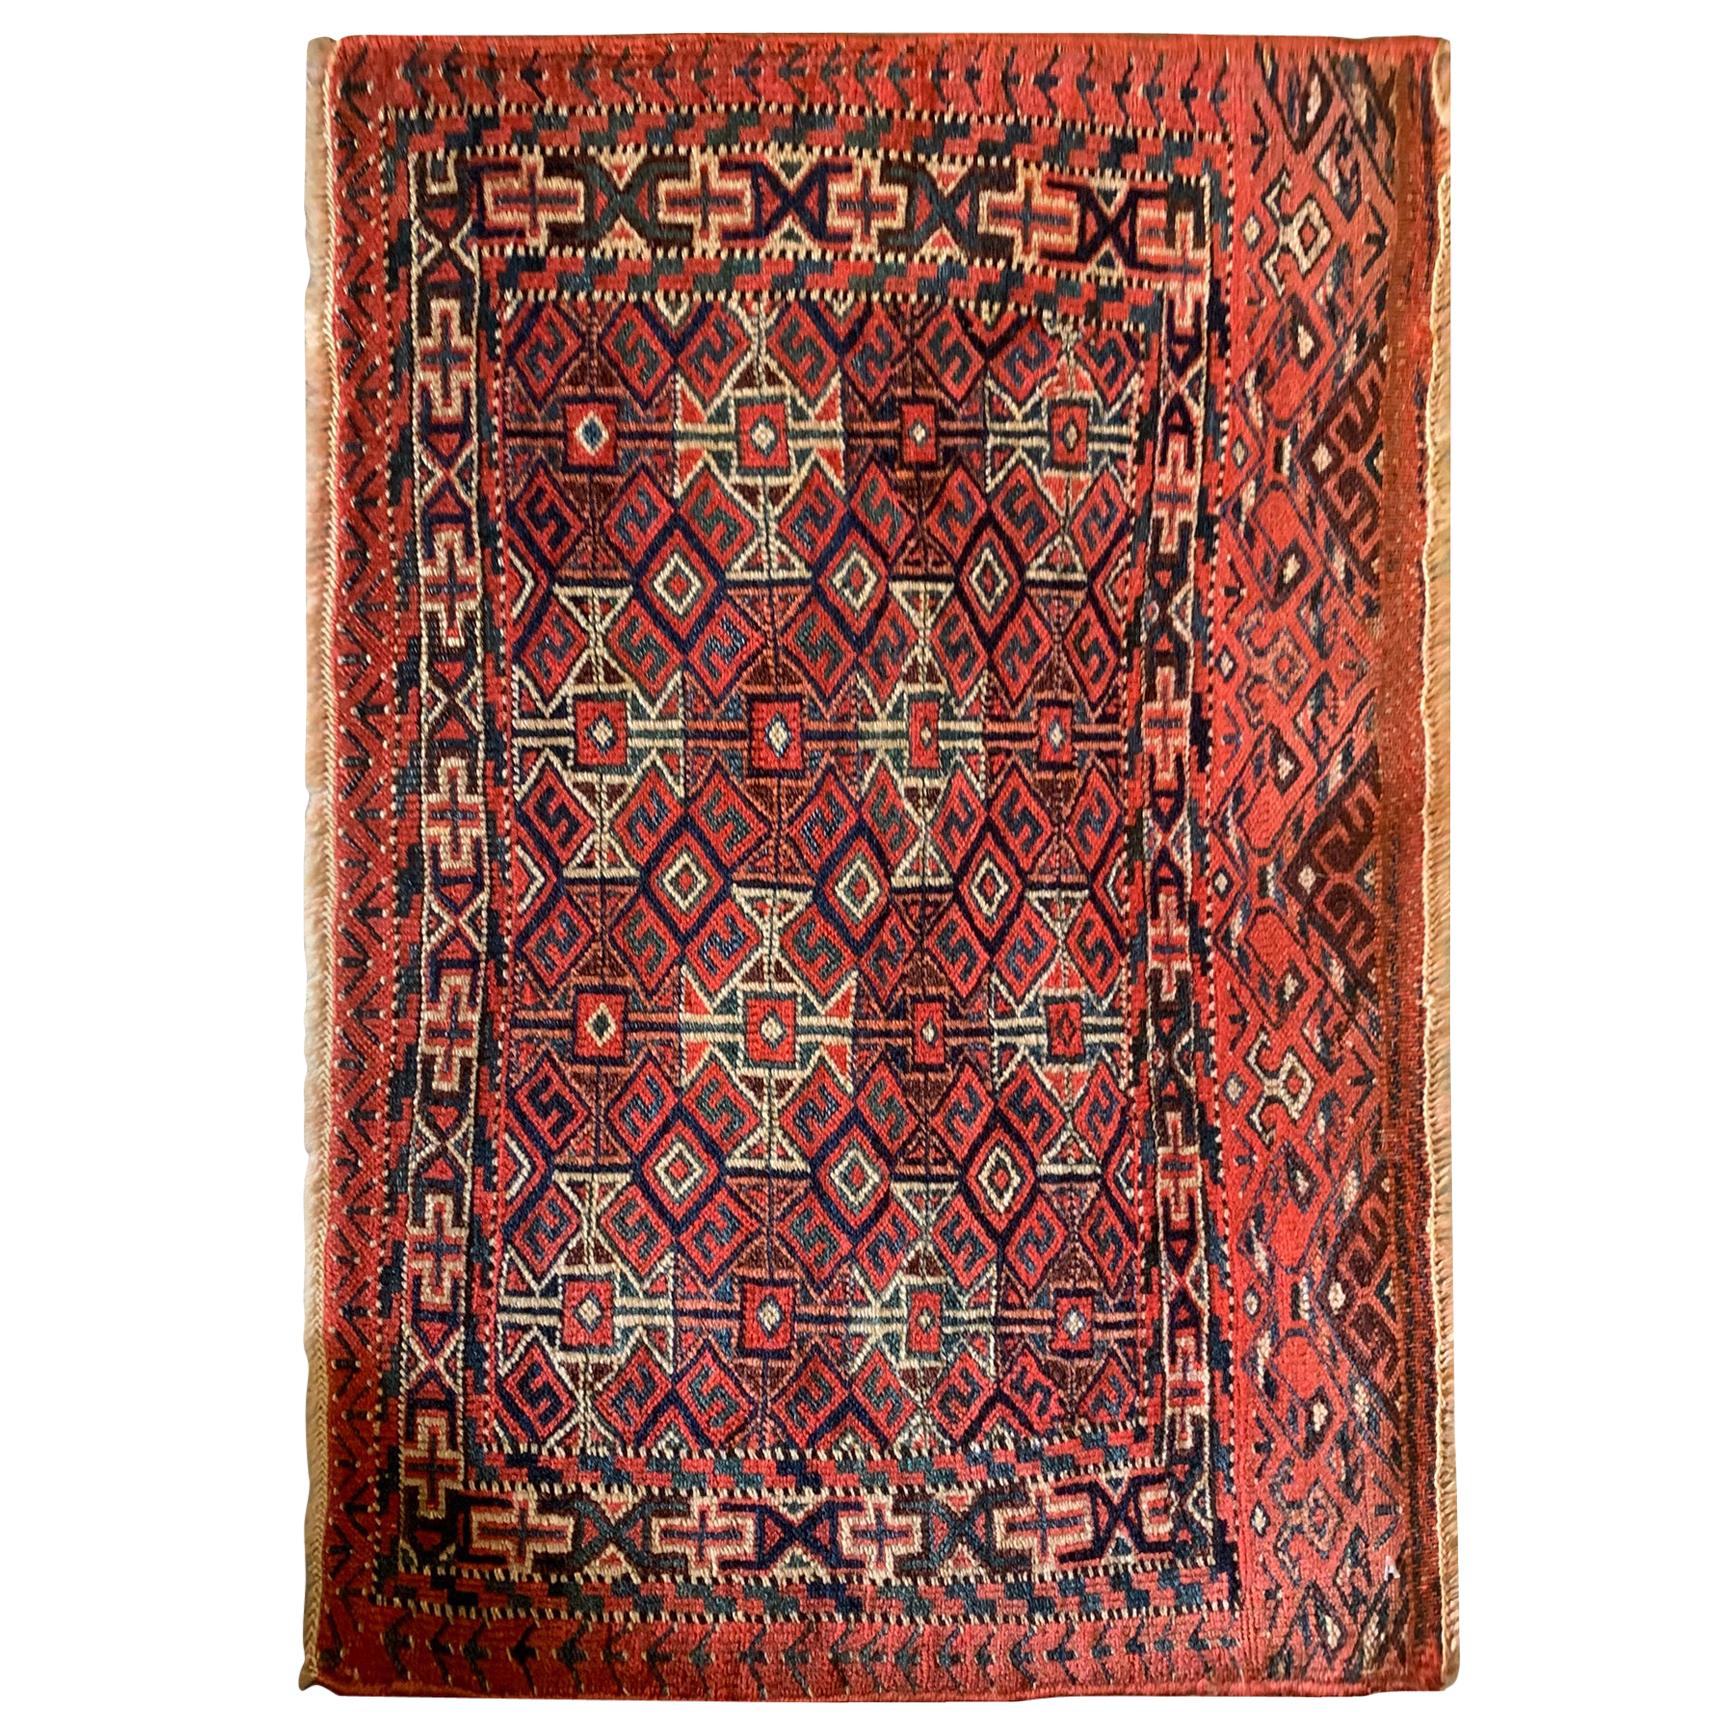 Tapis oriental ancien rouge, tapis turkmène en laine géométrique